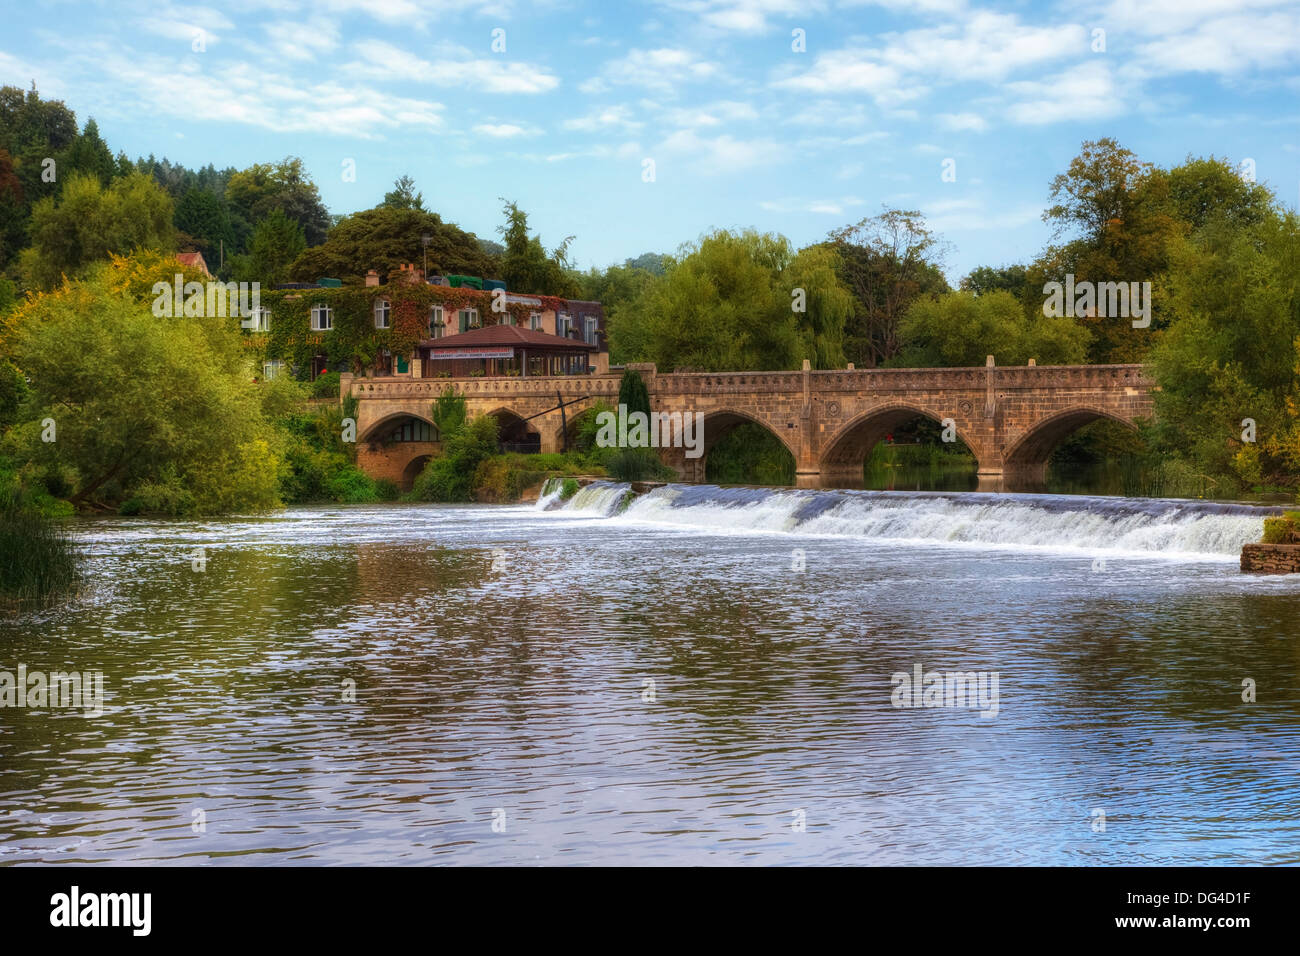 Furnished, mautpflichtige Brücke, Somerset, England, Vereinigtes Königreich Stockfoto